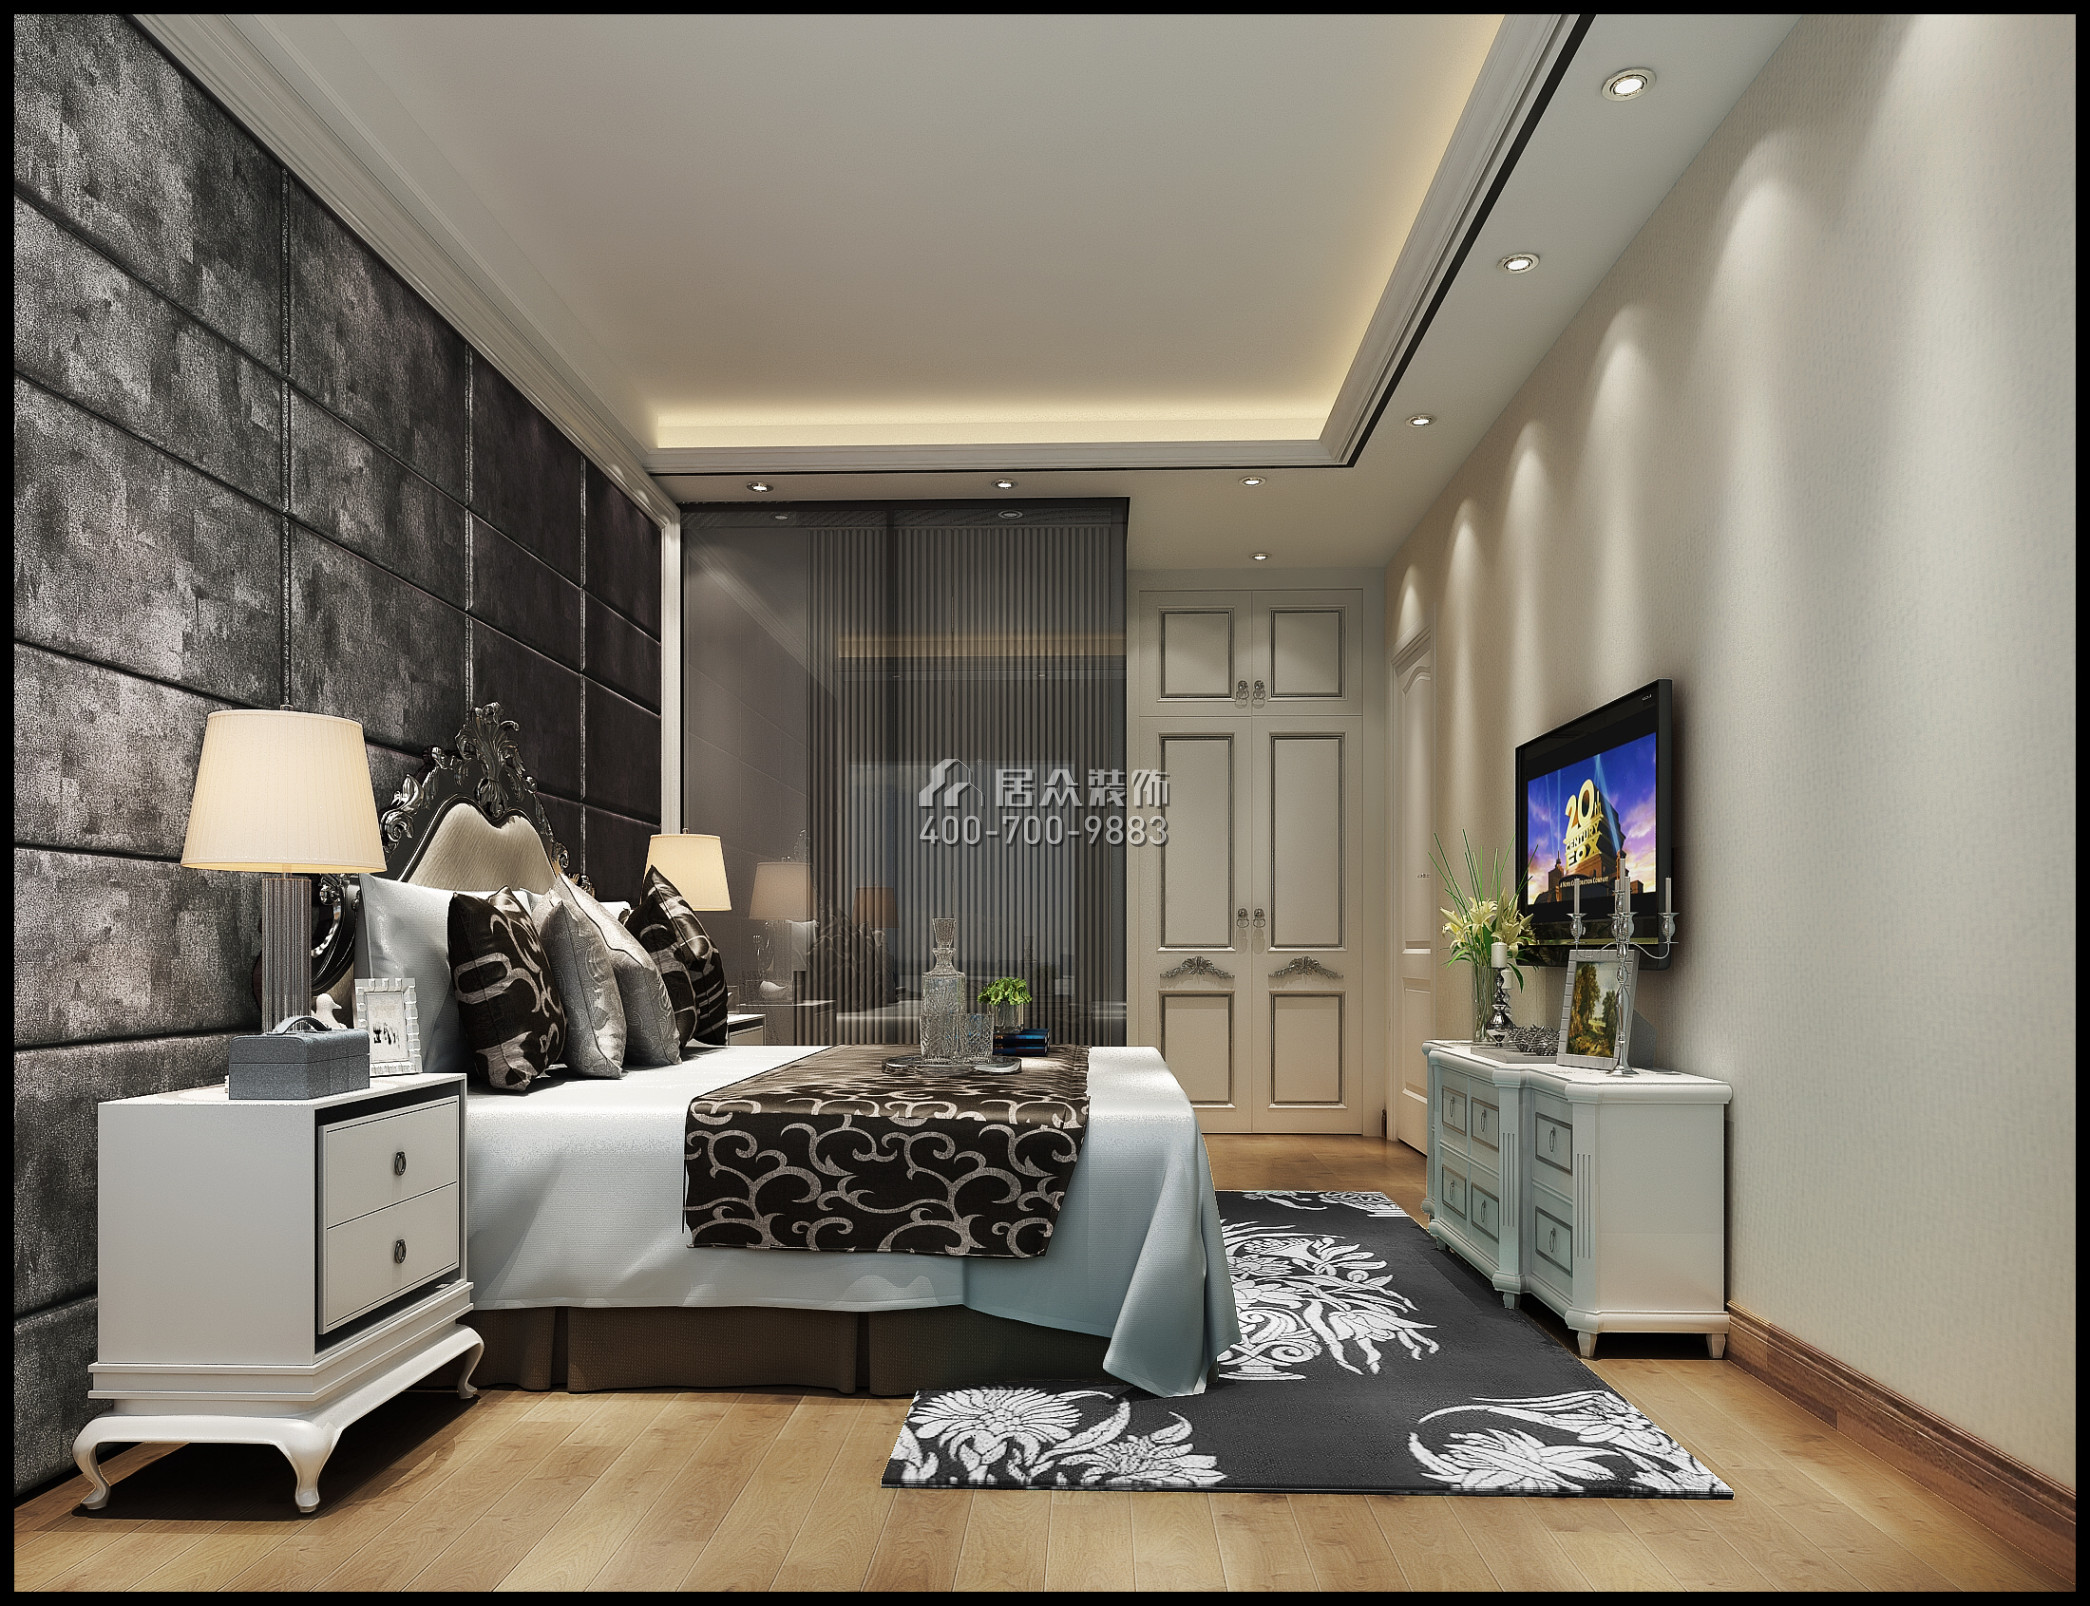 富力東山新天地120平方米歐式風格平層戶型臥室裝修效果圖